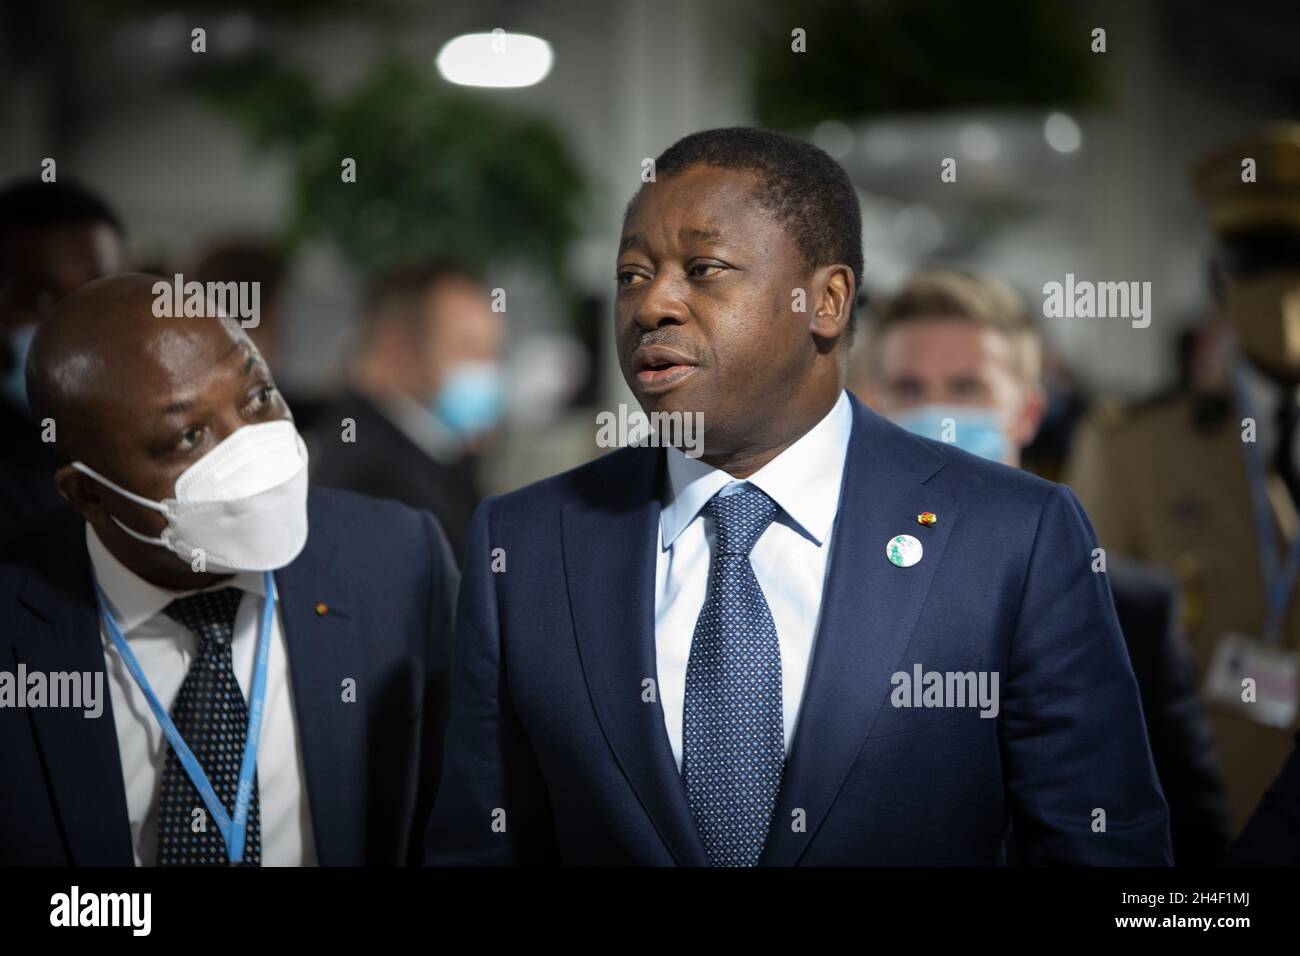 Glasgow, Royaume-Uni.Le Président du Togo, Faure Gnassingbé, lors de la 26e Conférence des Nations Unies sur les changements climatiques, connue sous le nom de COP26, à Glasgow, en Écosse, le 2 novembre 2021.Photo: Jeremy Sutton-Hibbert/Alamy Live News. Banque D'Images